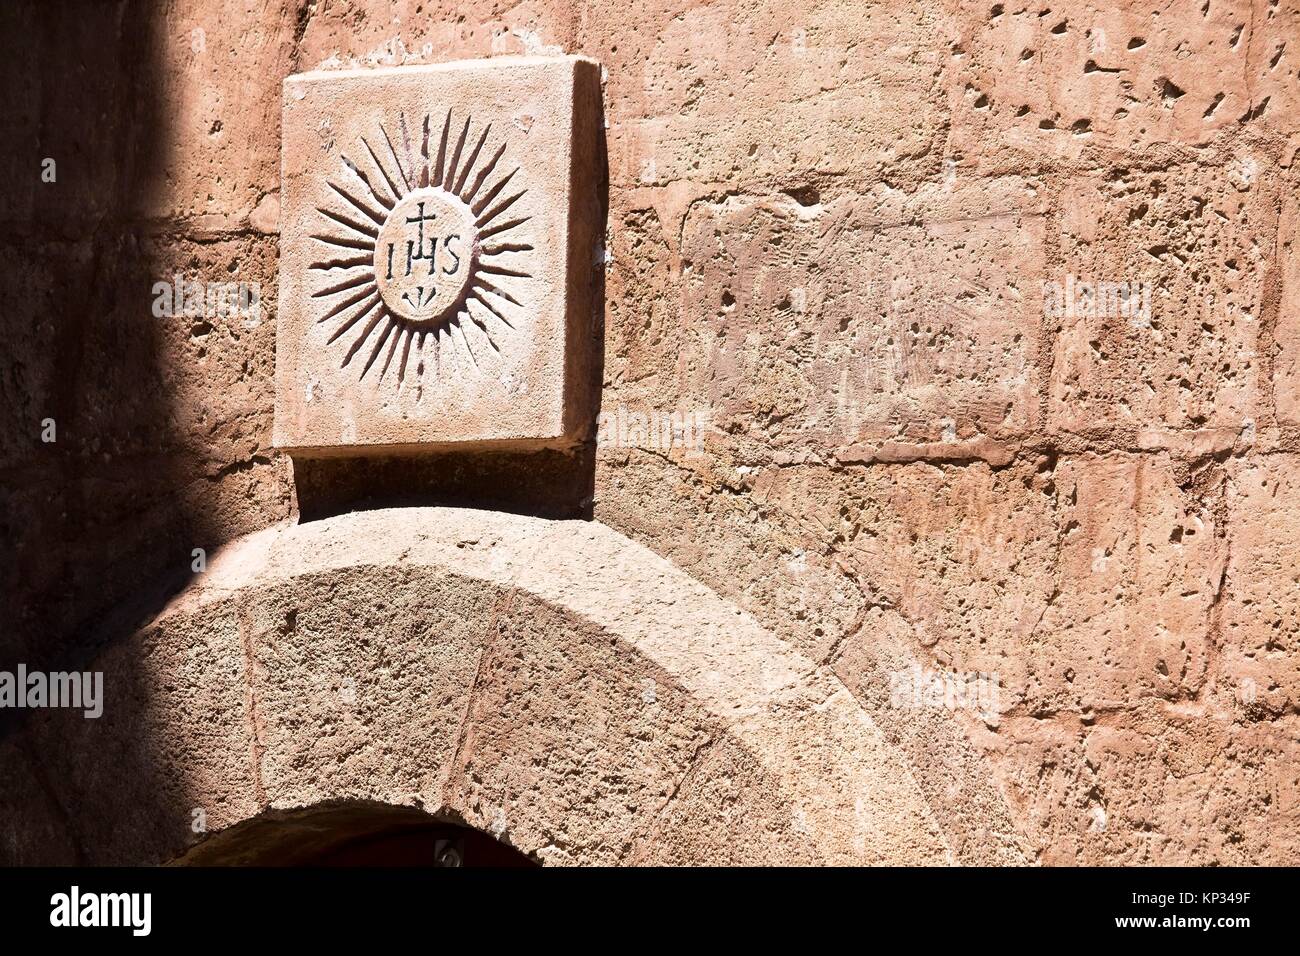 Detalle de una fachada con el símbolo IHS de Jesús. Murcia. España. Europa. Stock Photo